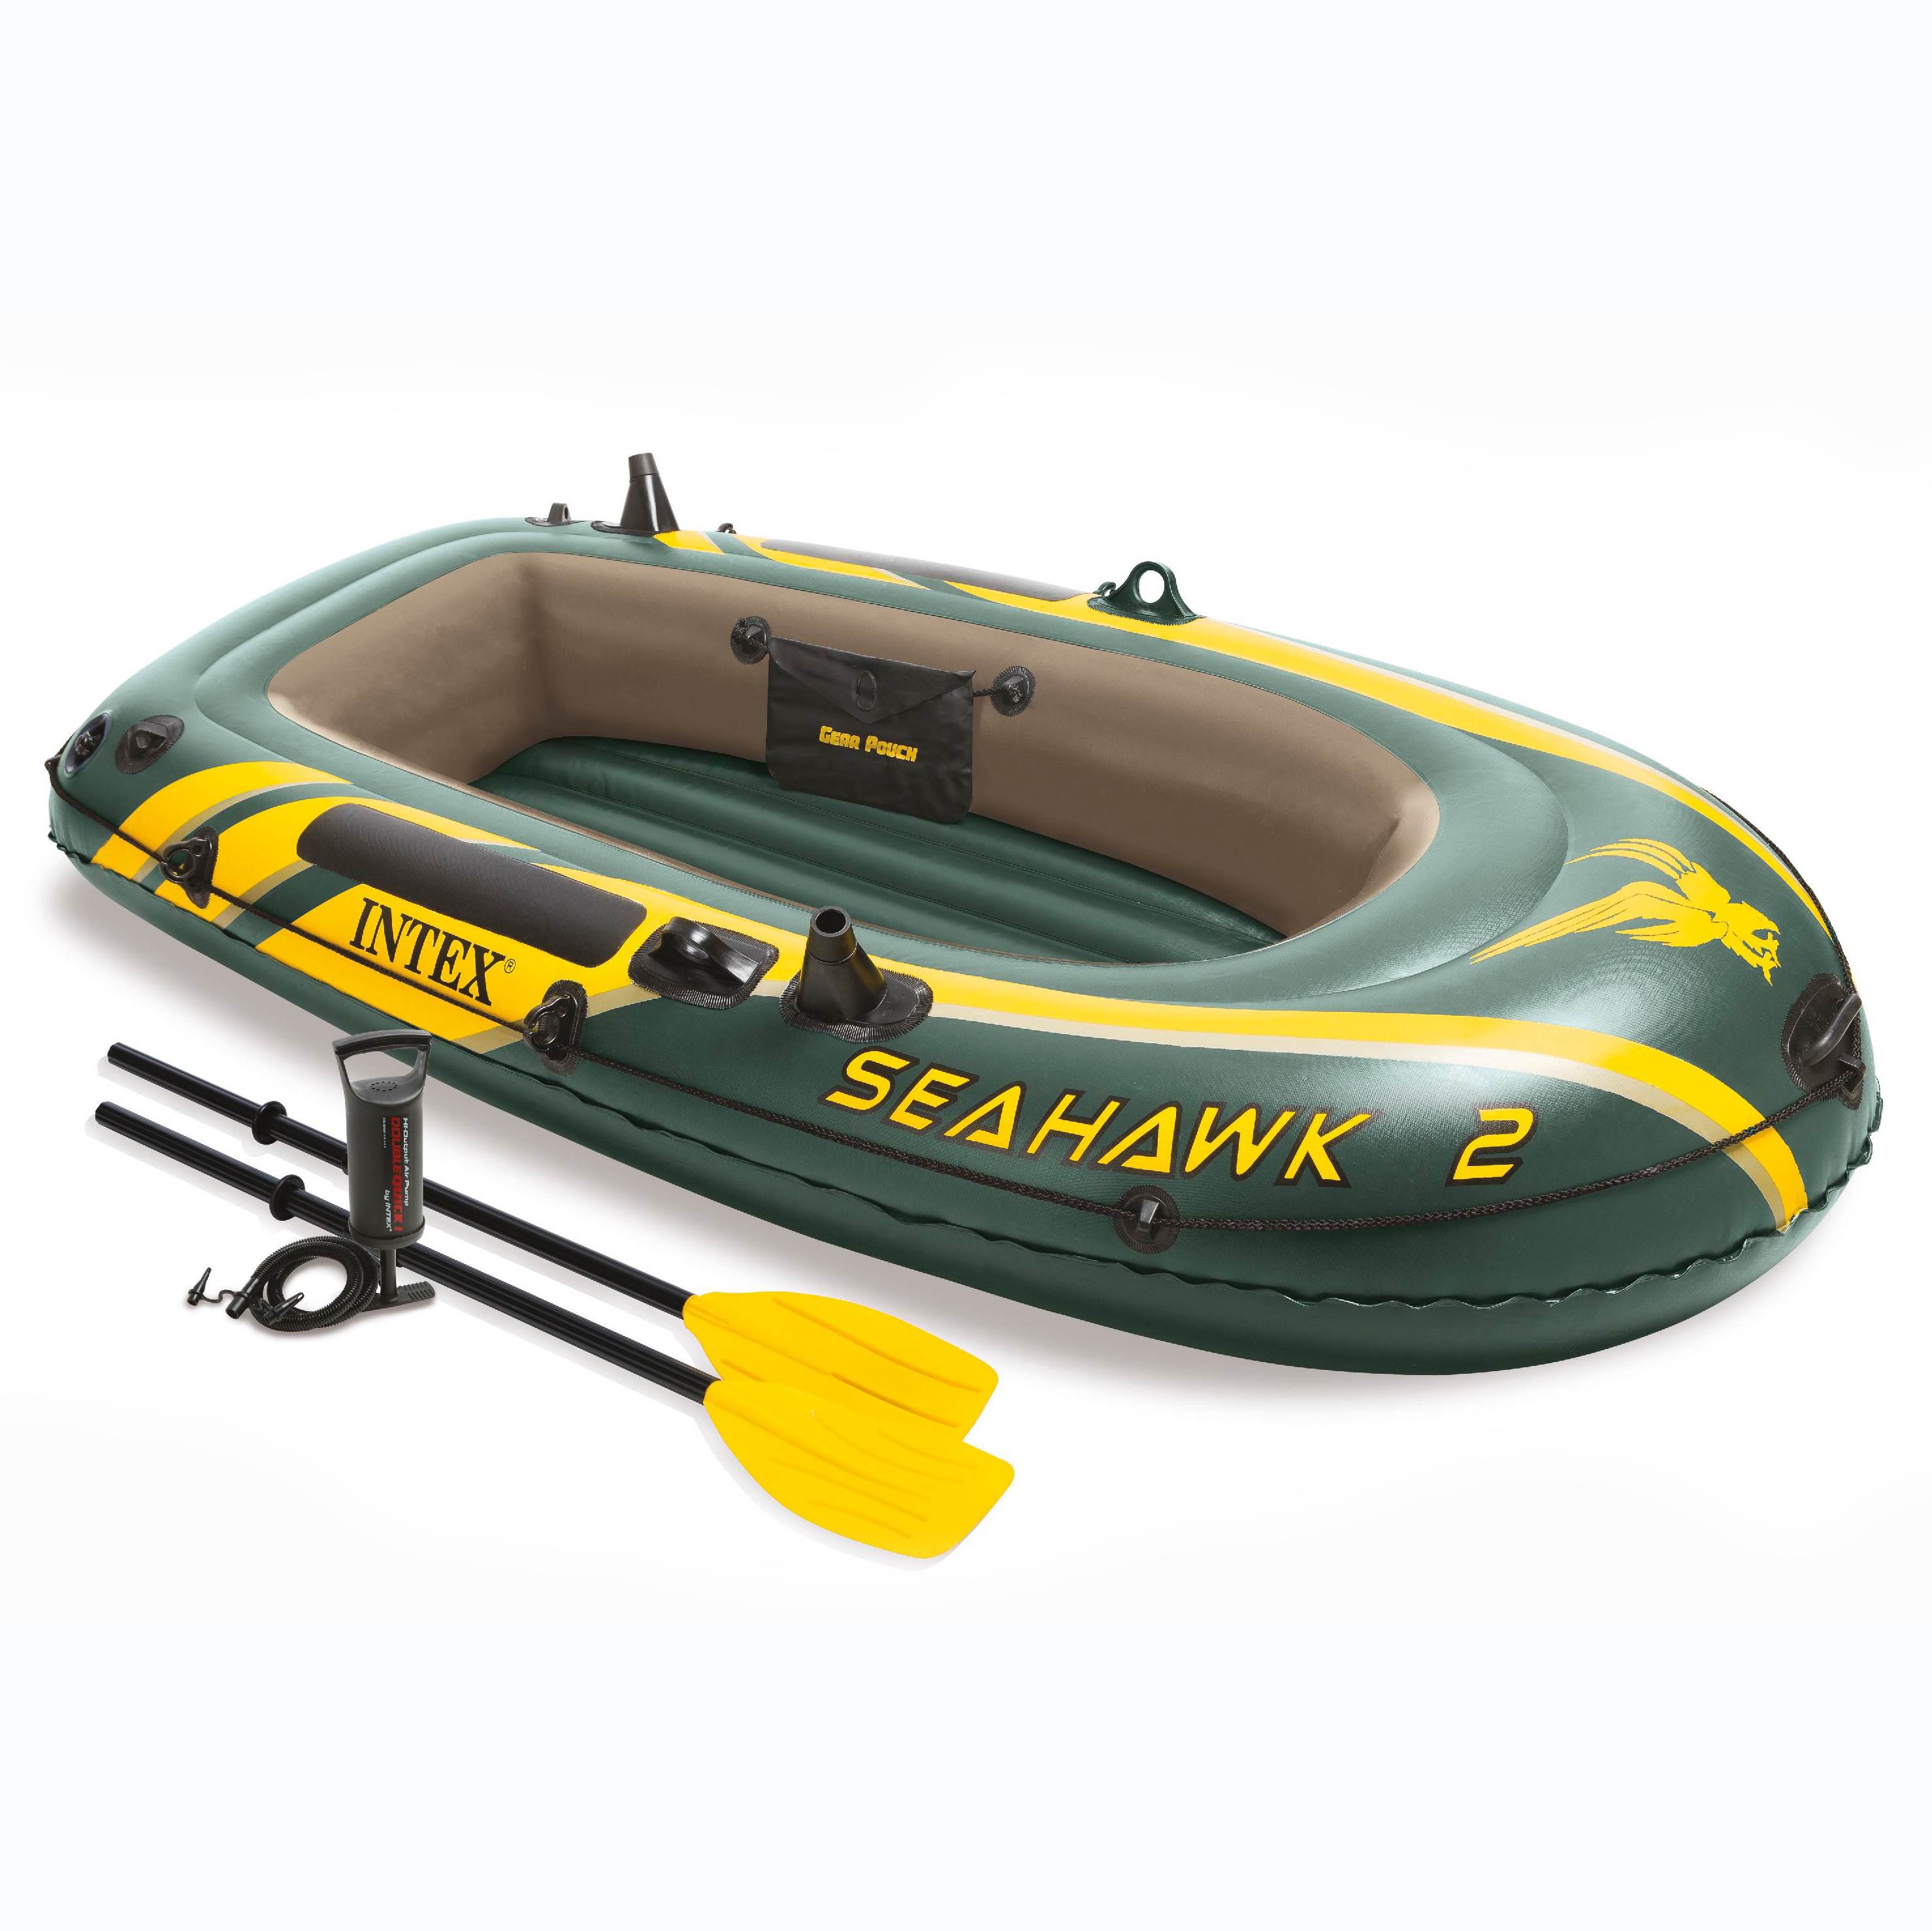 Intex Seahawk 2 Inflatable Boat Set + Oars/Pump/Motor Mount | 68347EP + 68624E - image 3 of 7